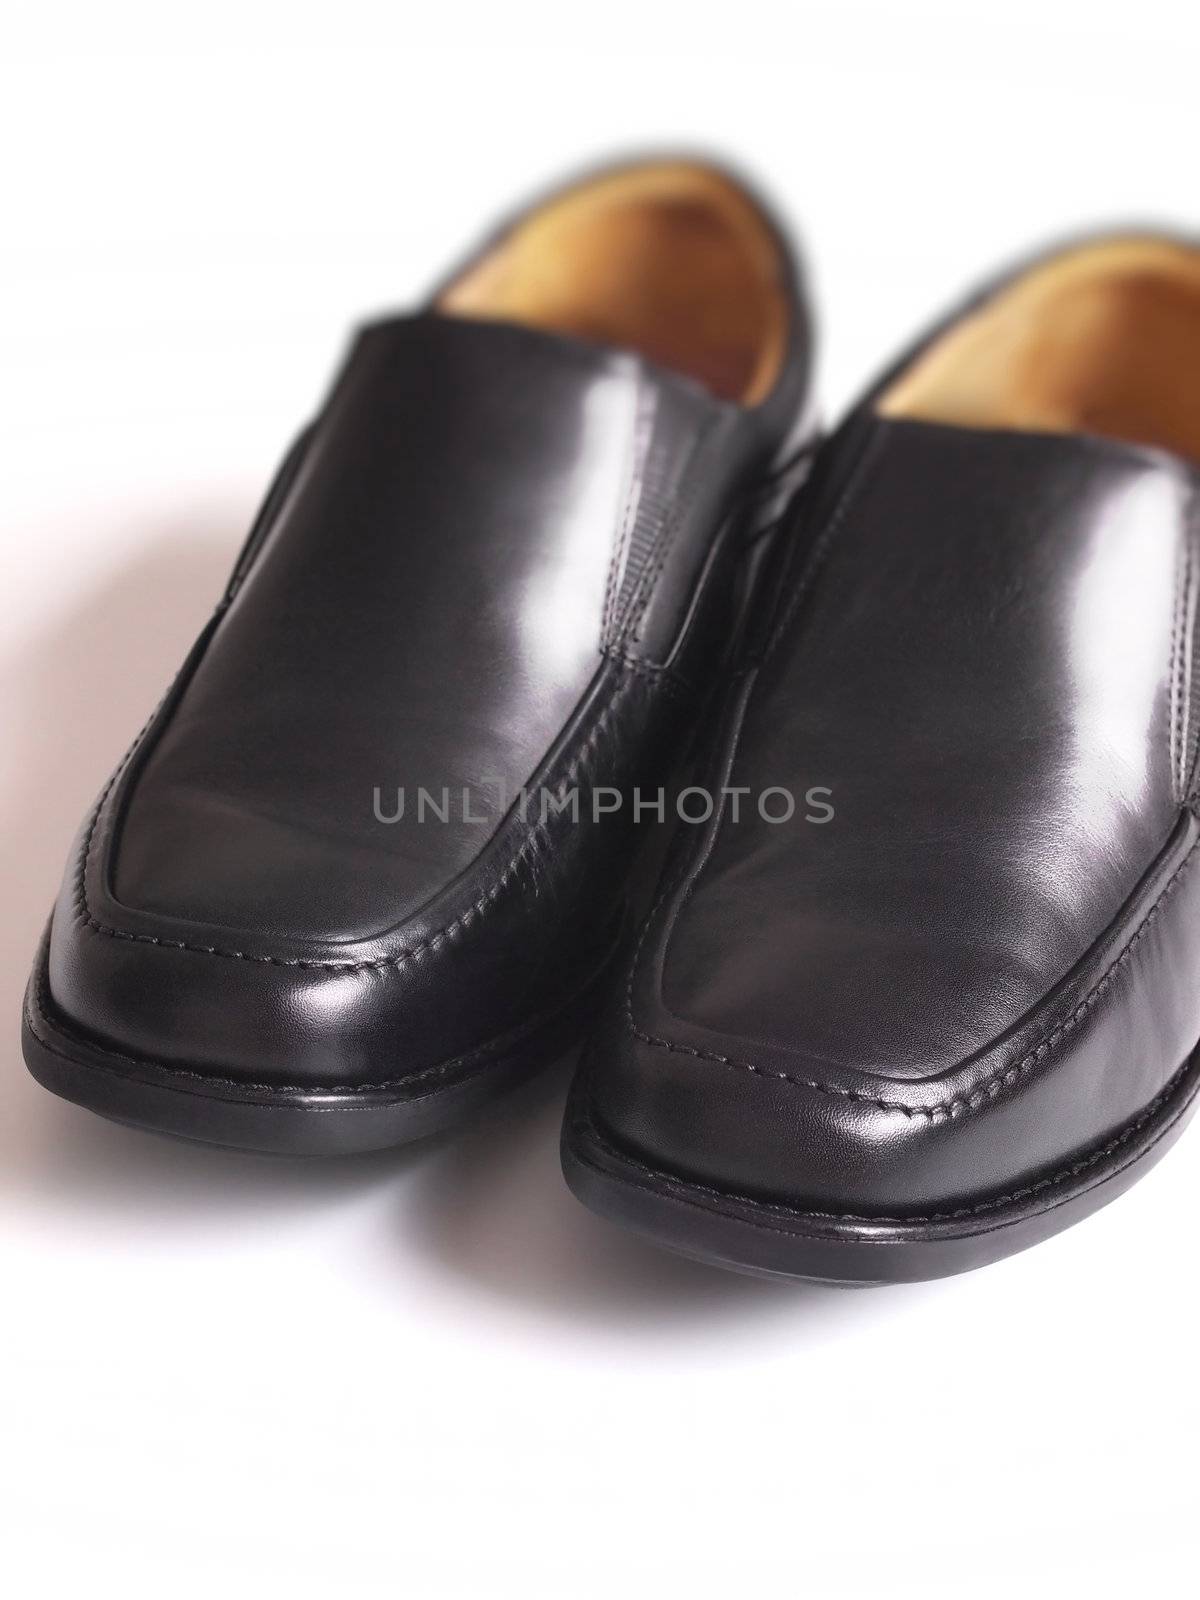 men'sblack business shoes by zkruger